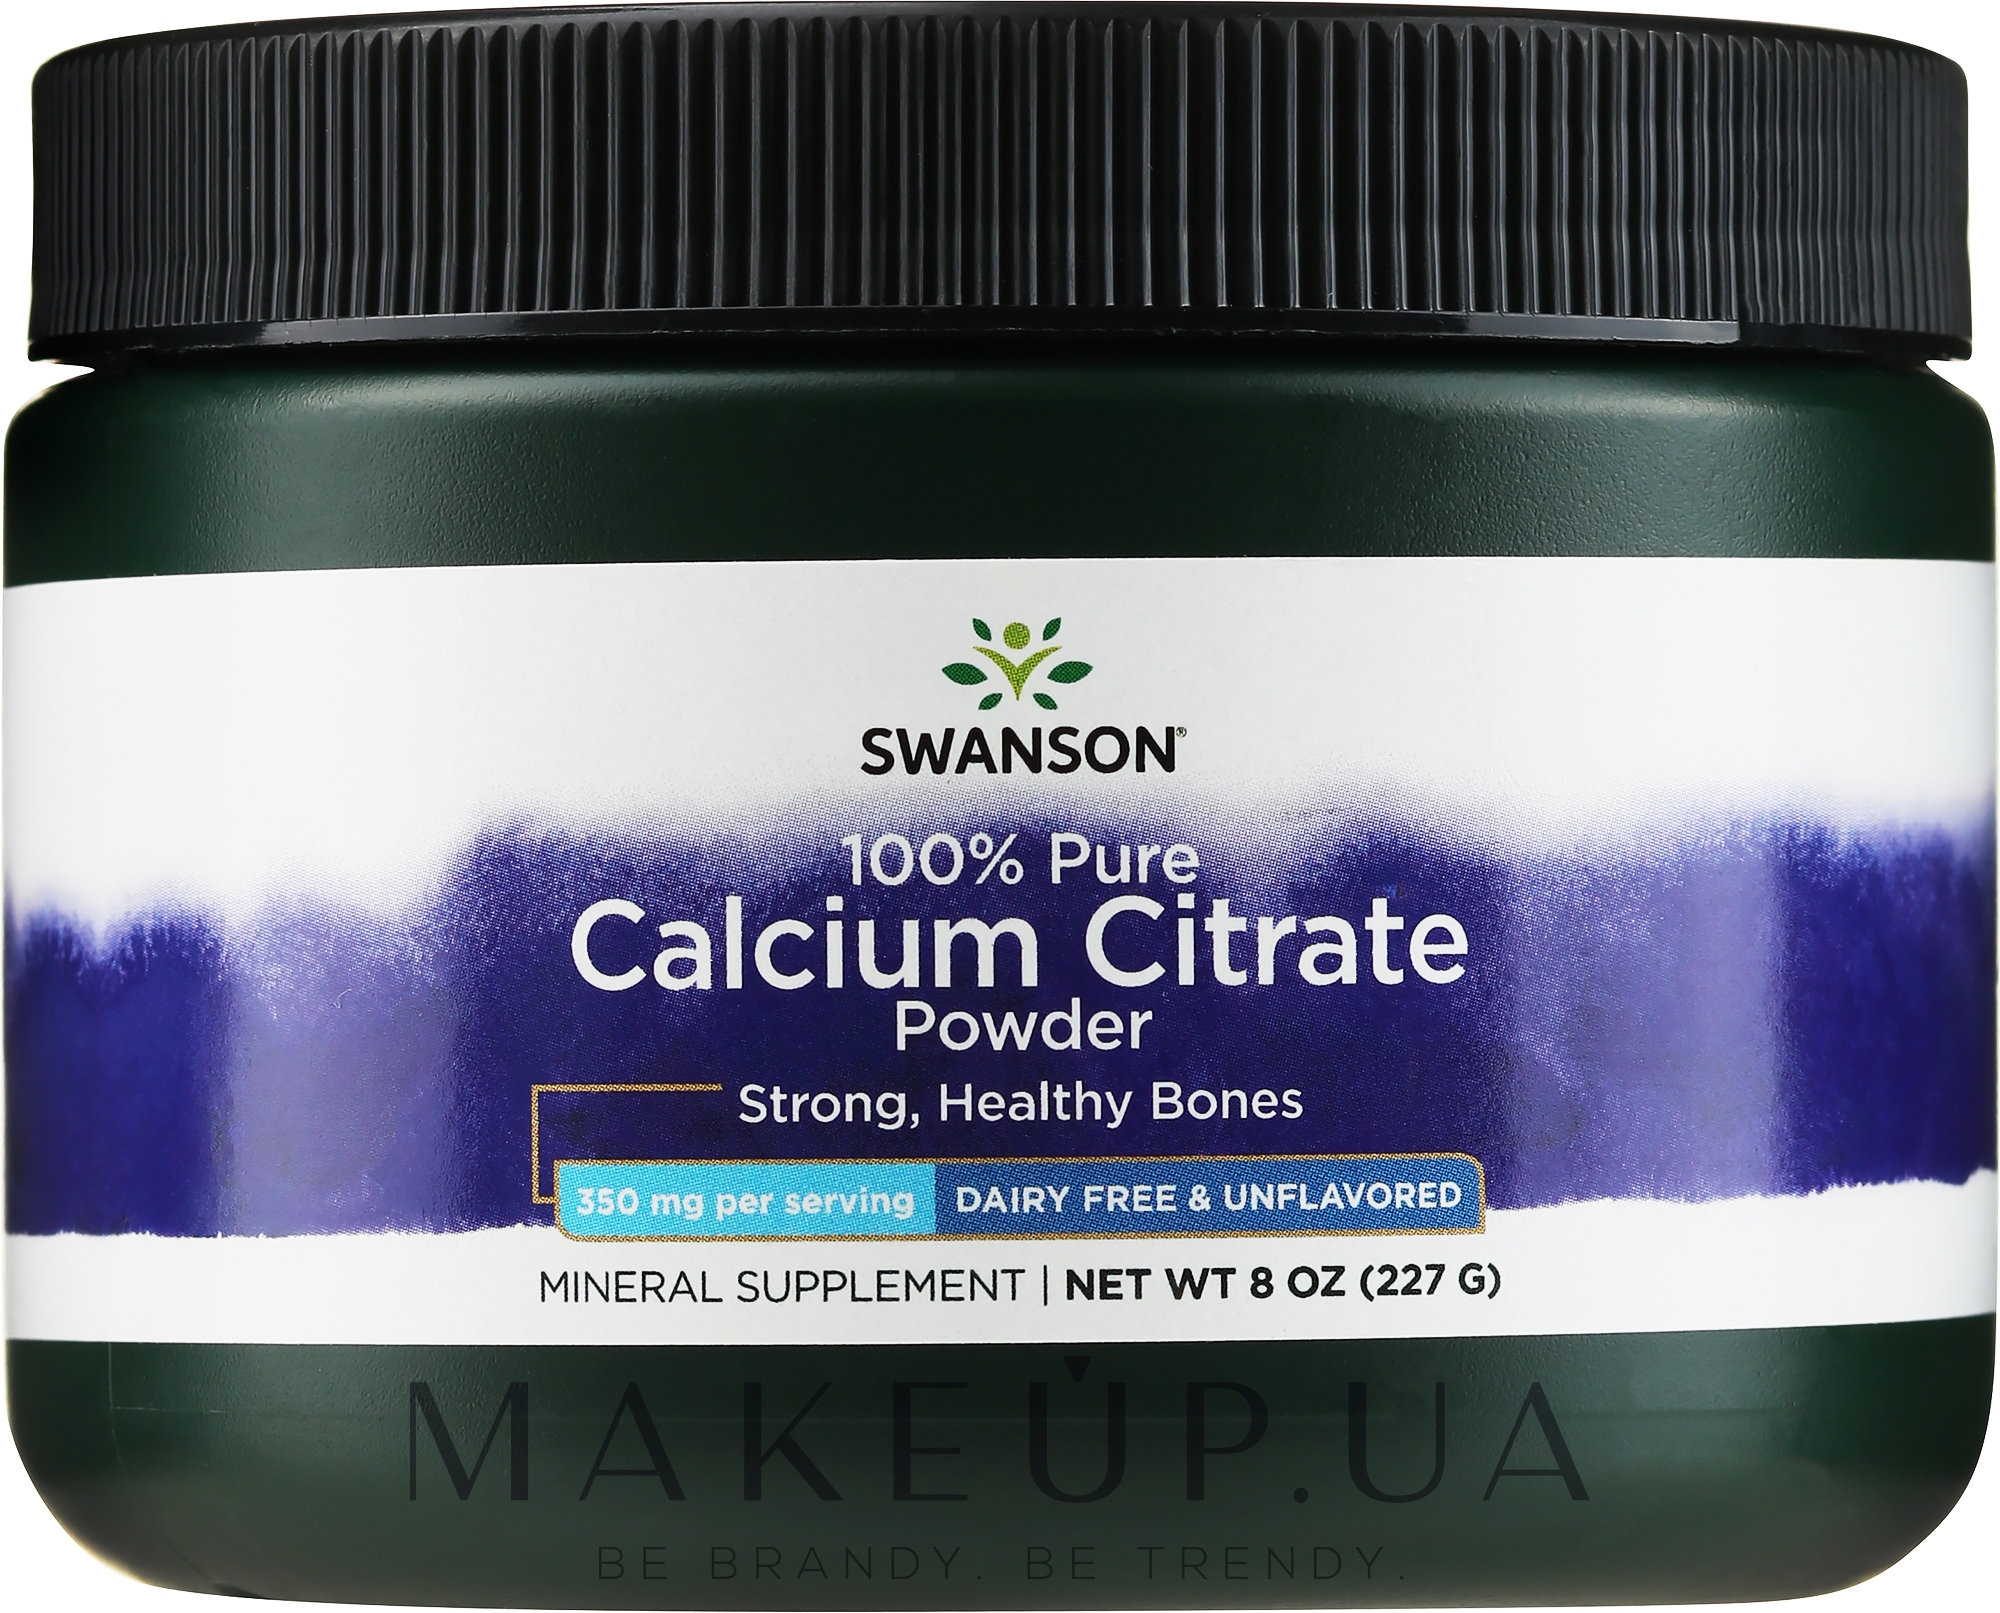 Пищевая добавка в порошке "Цитрат кальция" - Swanson Calcium Citrate Powder 100% Pure And Dair Free — фото 227g